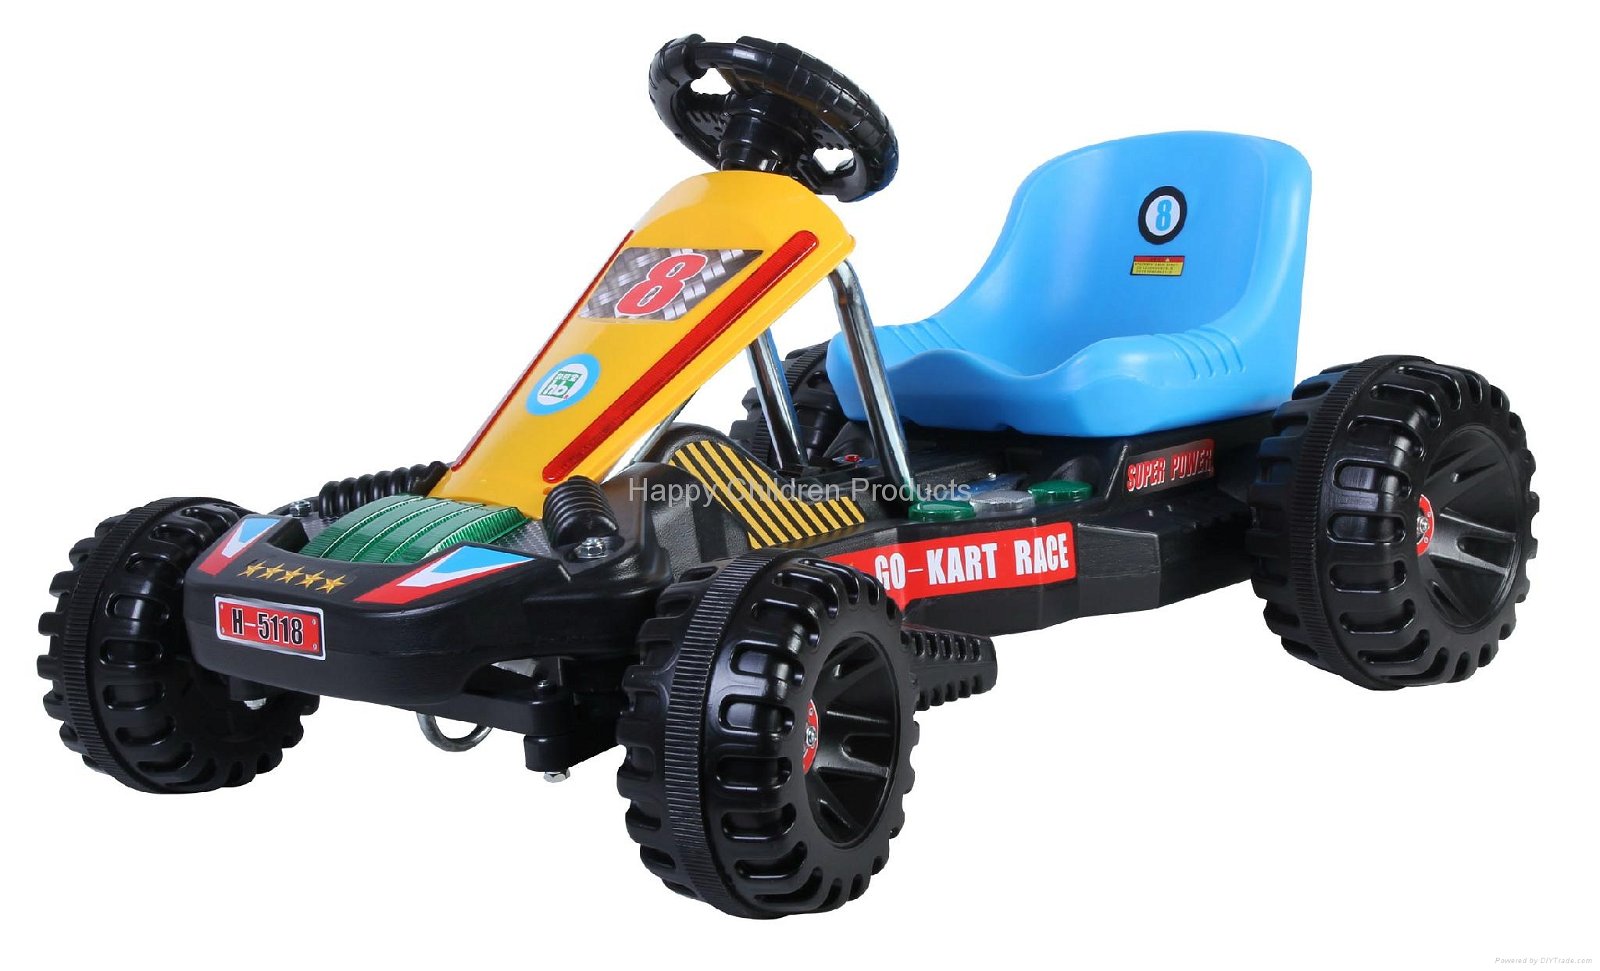 Emulational Kart Racing Car